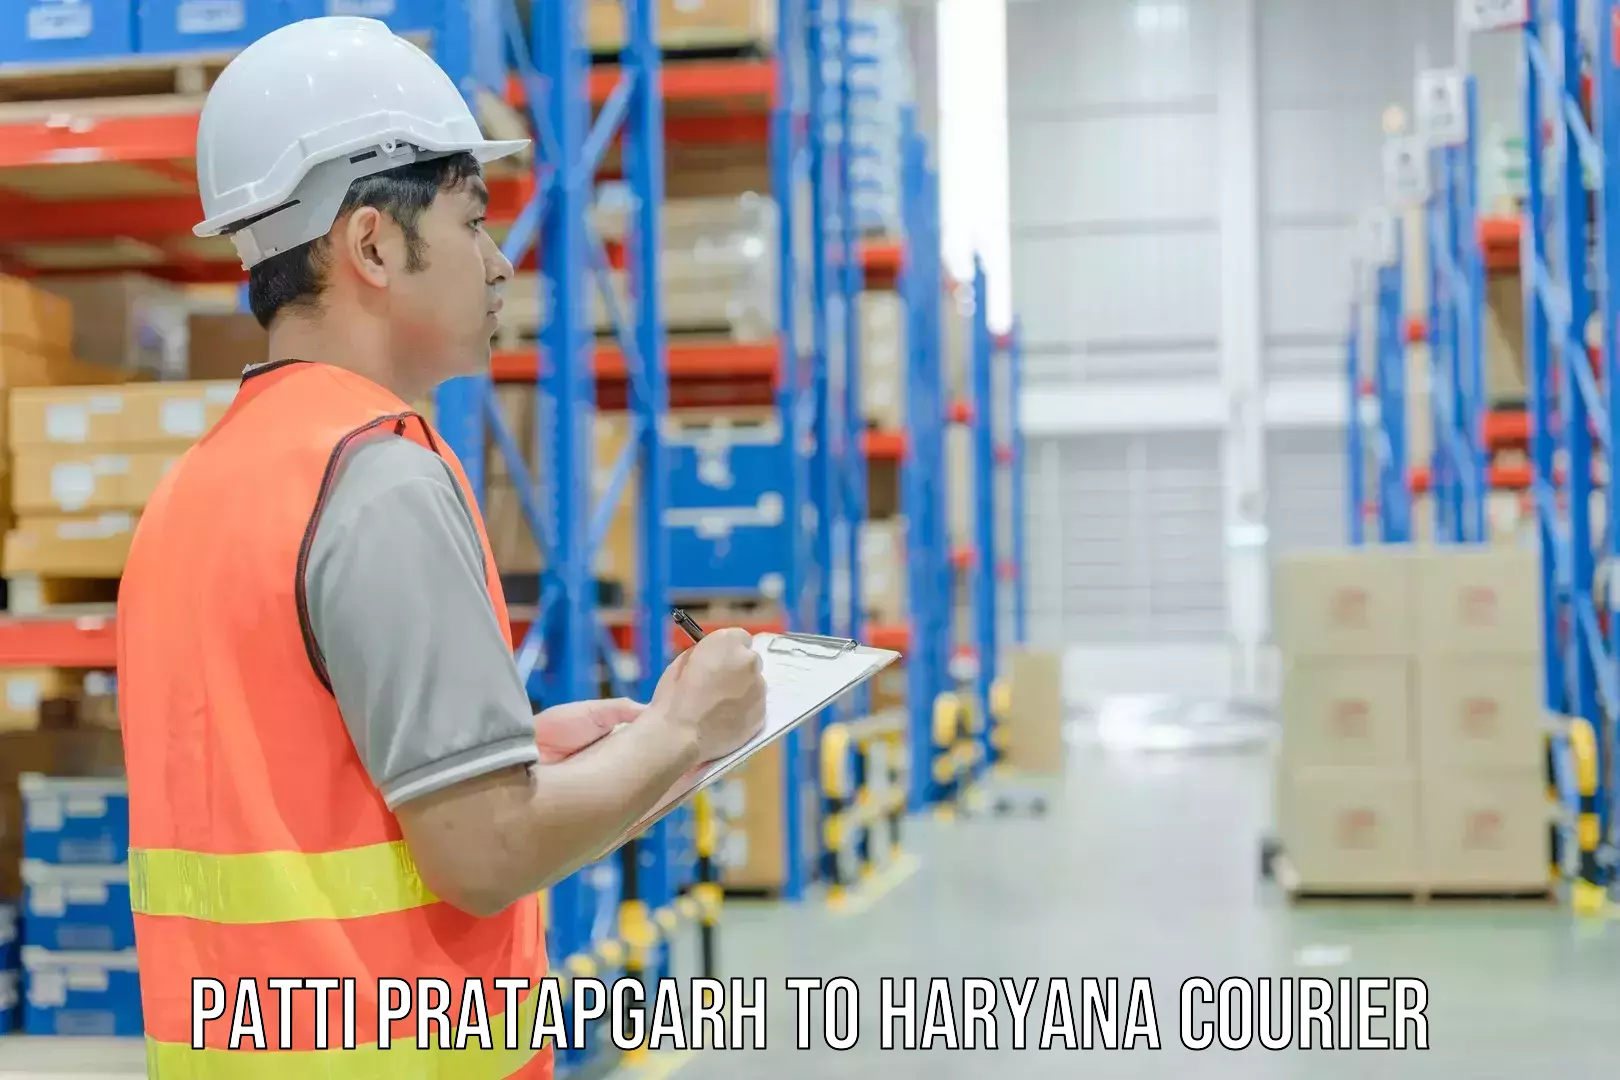 Multi-service courier options Patti Pratapgarh to NCR Haryana